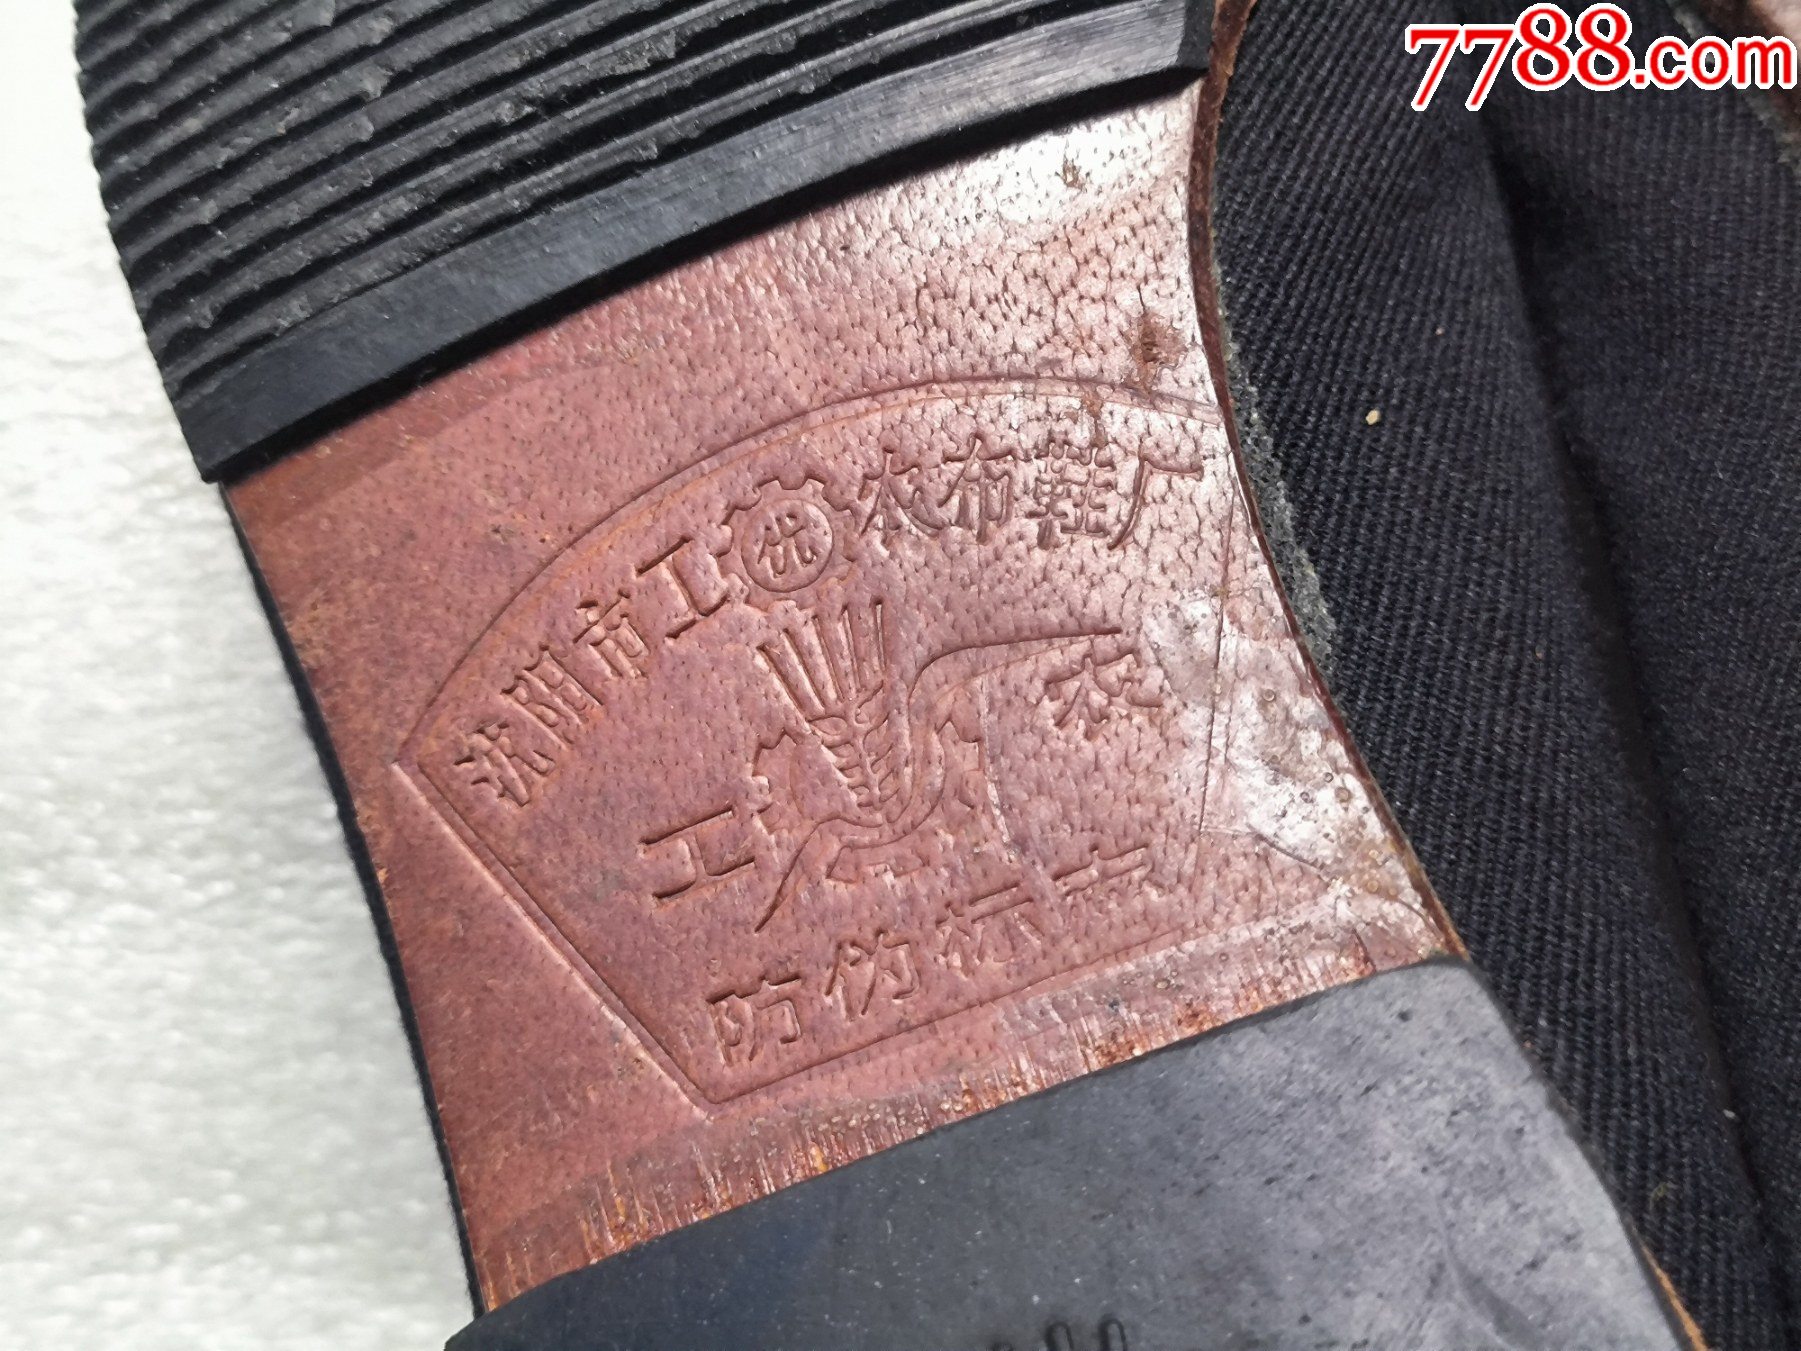 沈阳市工农布鞋厂生产的工农牌鞋m776接近新品纯皮底瑕疵图中有示品相